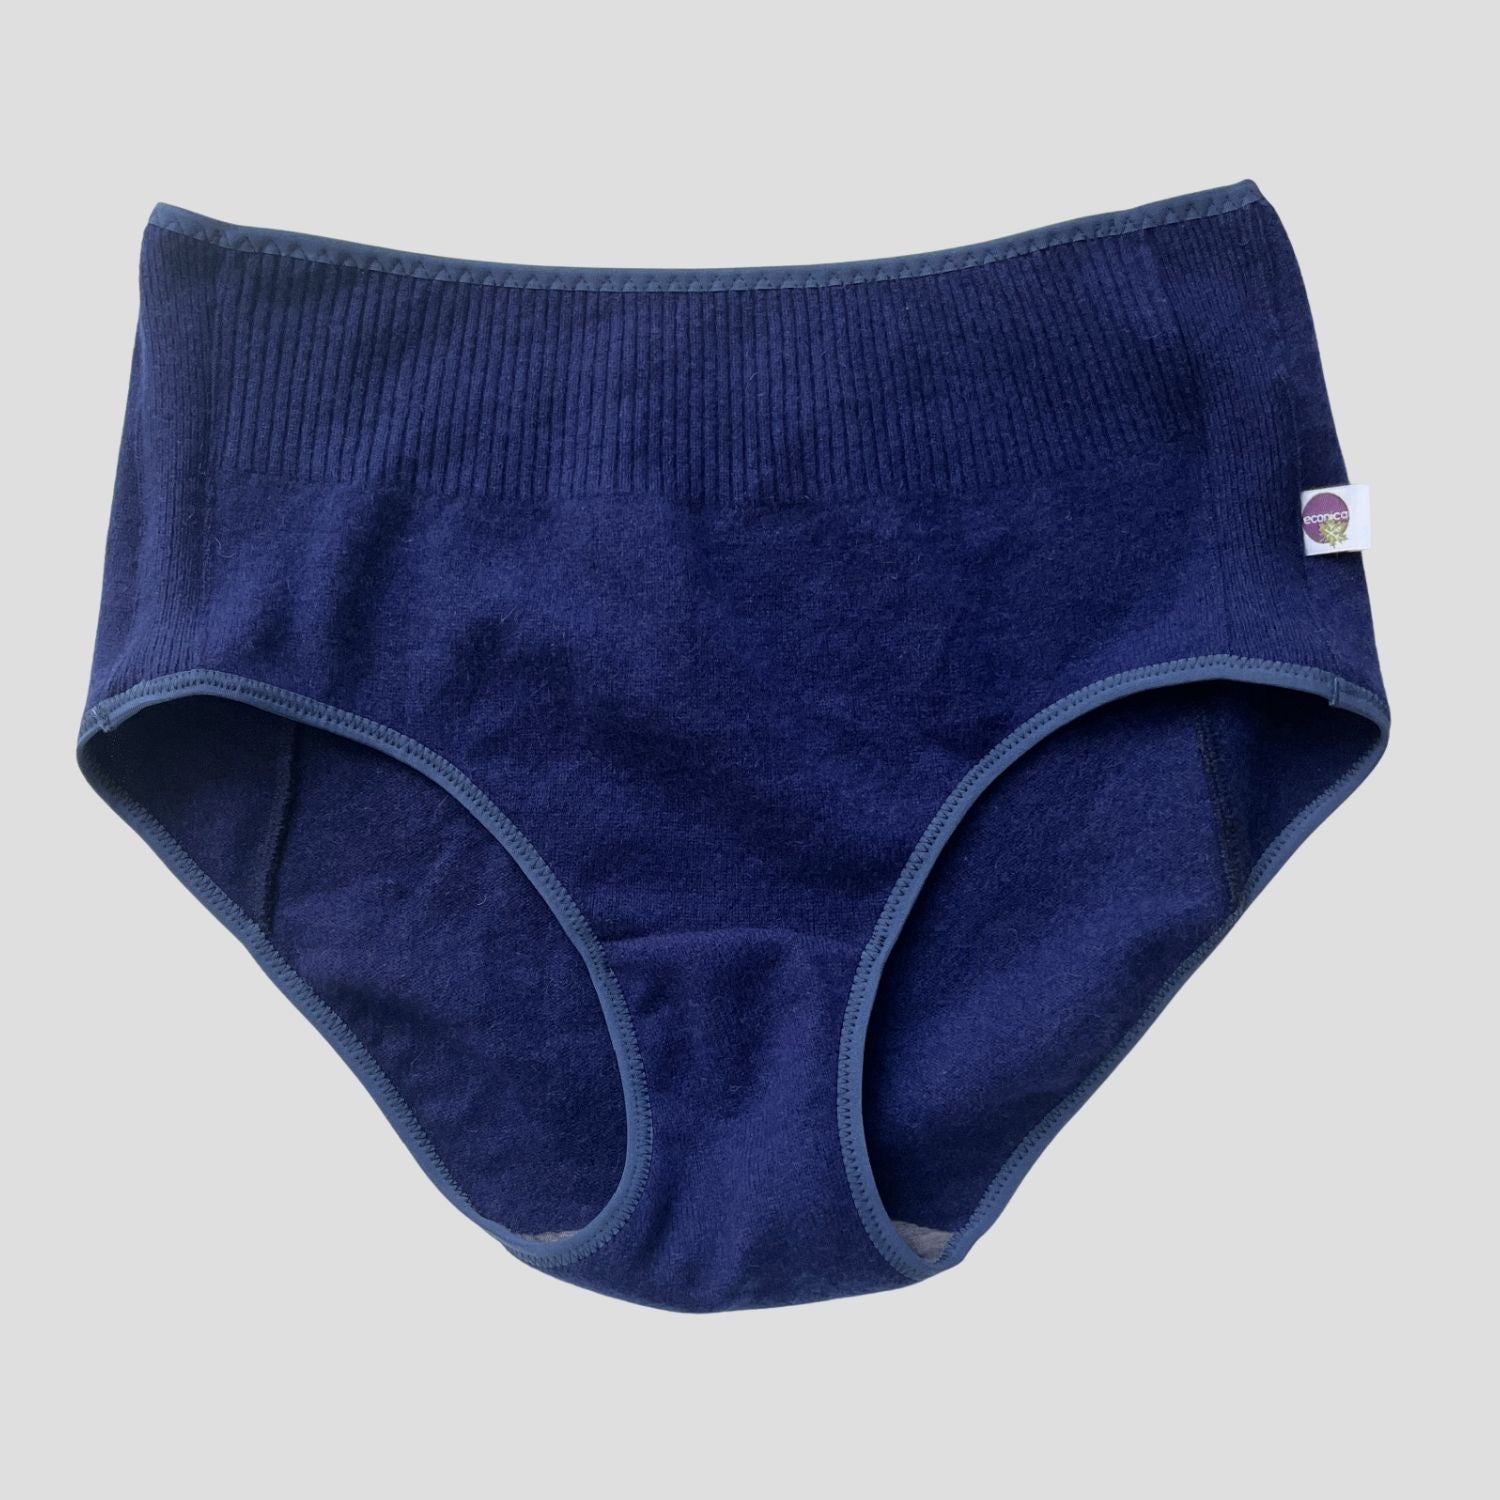 Merino wool underwear brief for women